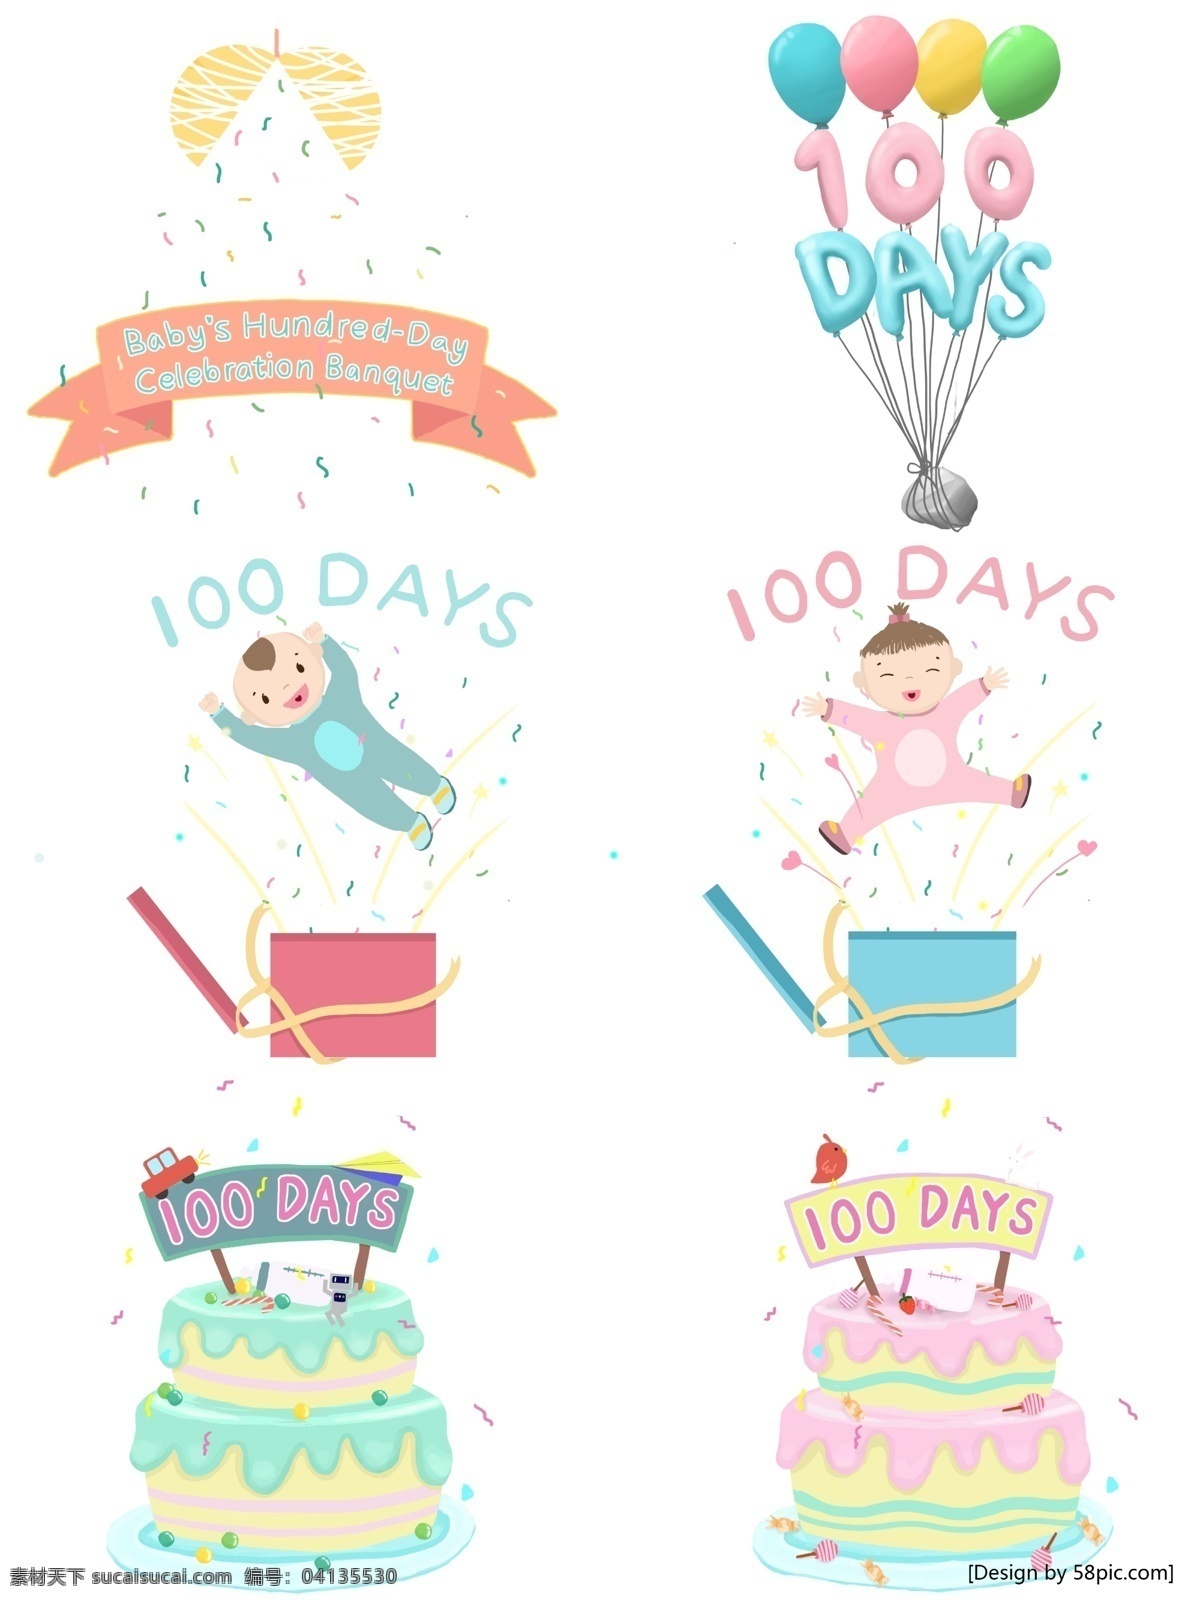 天 百日 宴 宝宝 婴儿 生日蛋糕 气球 蛋糕 100天 百日宴 生日 可爱 清新 卡通 幻灯片 装饰素材 手绘 礼花 横幅 礼物 装饰元素